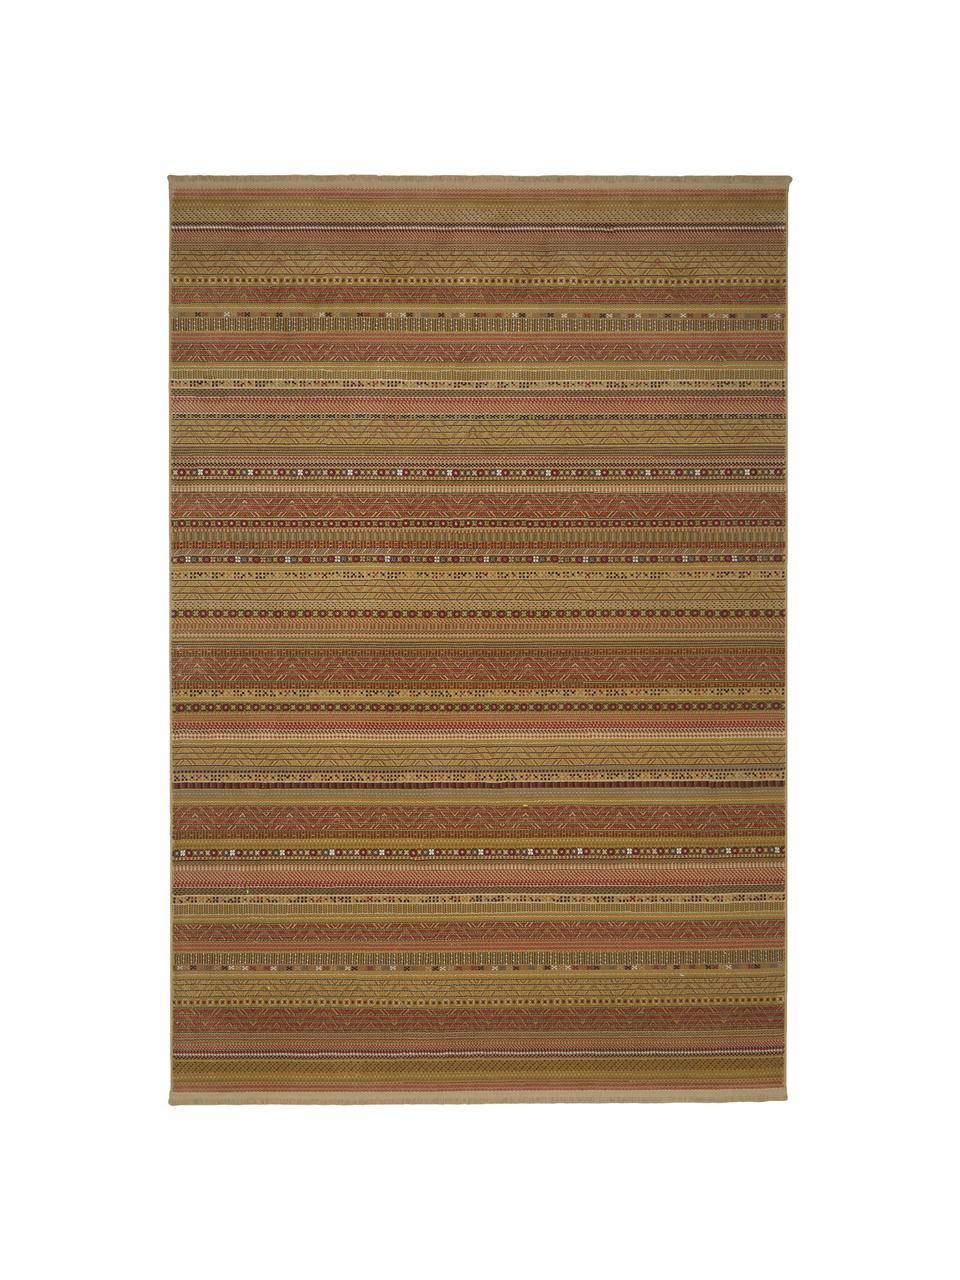 Teppich Nepal mit bunten Details und Fransen, Flor: 90% Polypropylen, 10% Vis, Beige, Mehrfarbig, B 200 x L 295 cm (Grösse L)